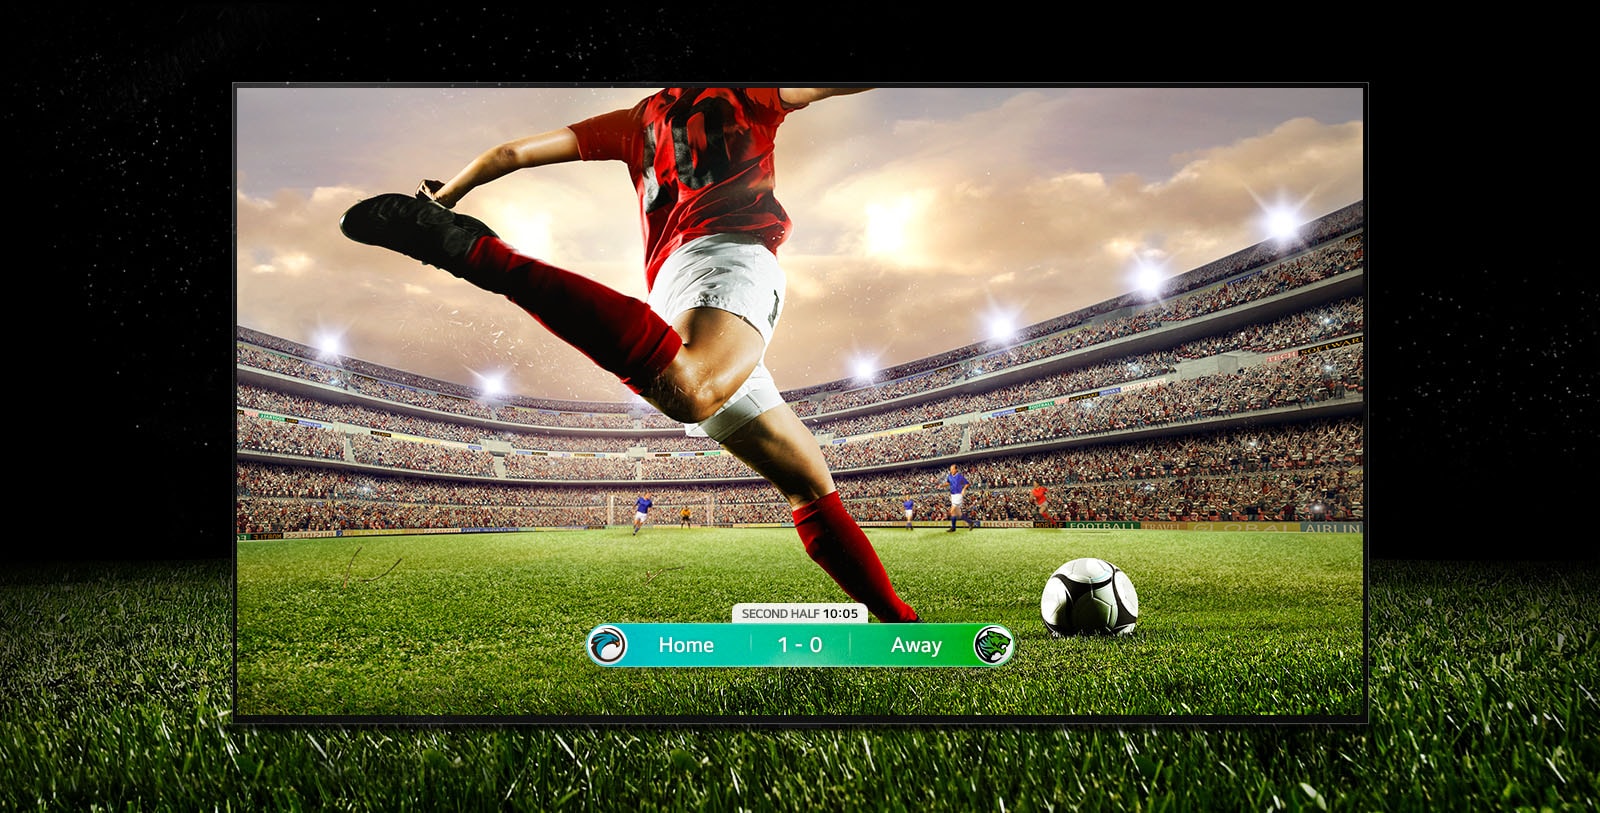 Зображення екрана, на якому зображено футбольний матч із гравцем у червоній смугастій майці, який готується запустити м'яч через стадіон.  Результат матчу видно у нижній частині екрану.  Зелена трава з поля виходить з рамки екрана на чорному тлі.